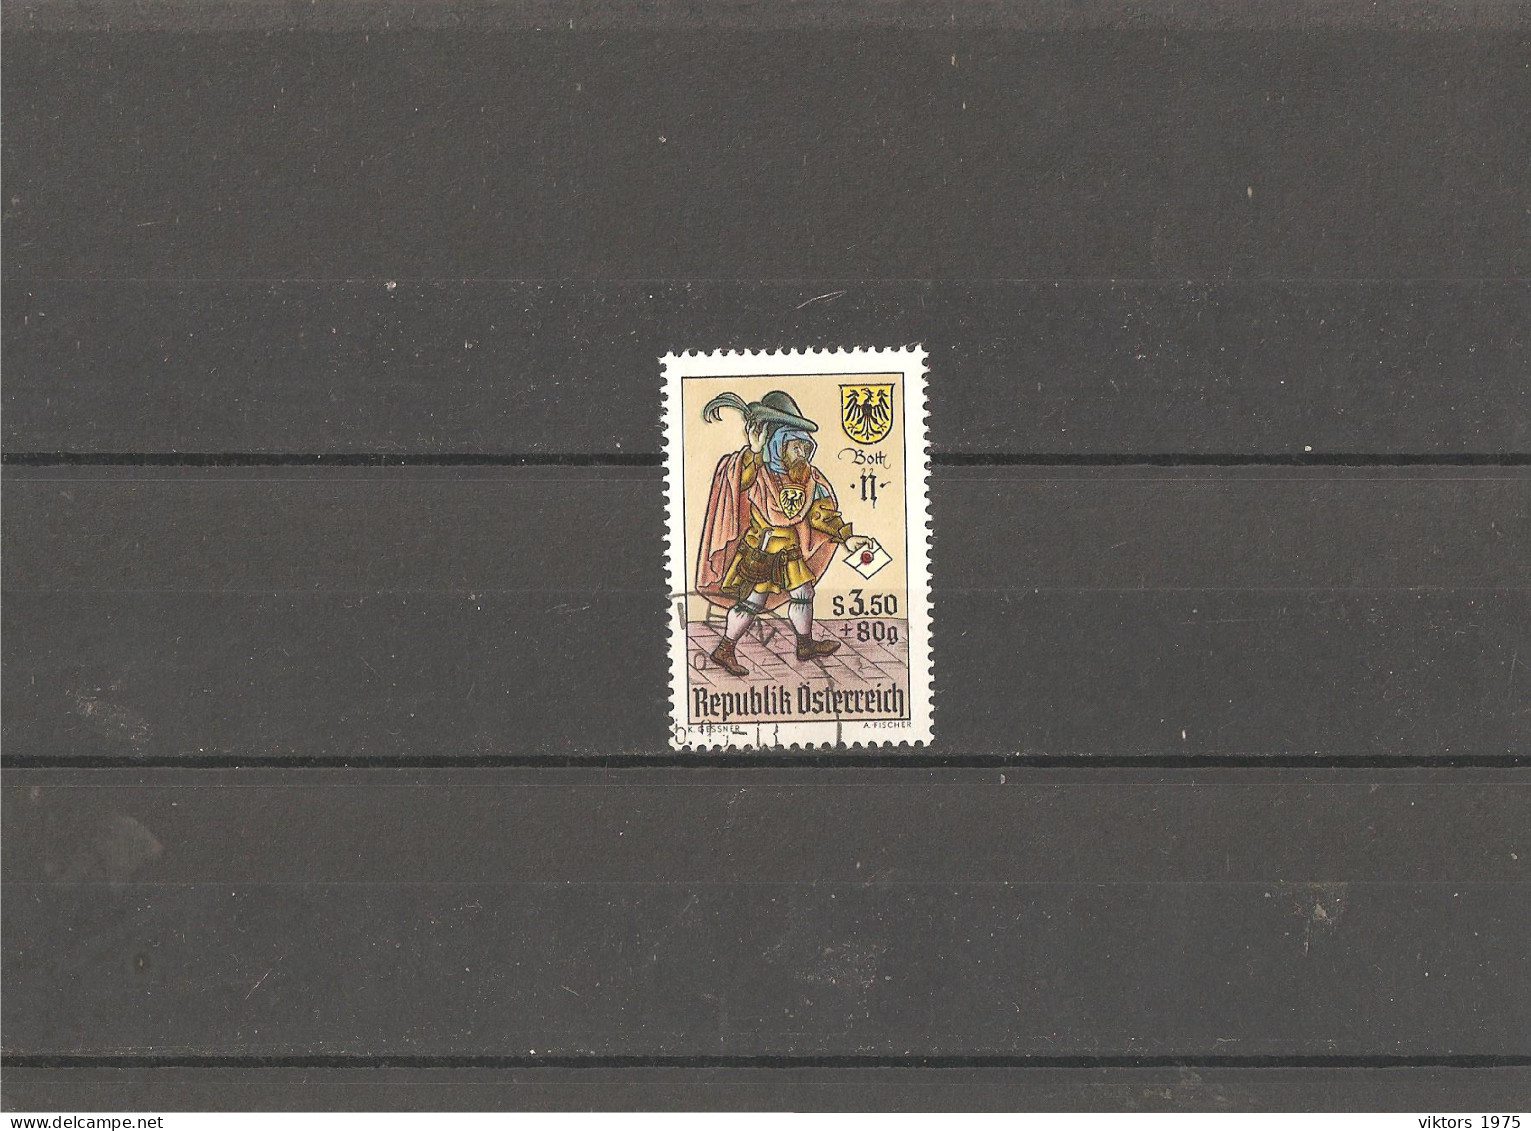 Used Stamp Nr.1255 In MICHEL Catalog - Usati